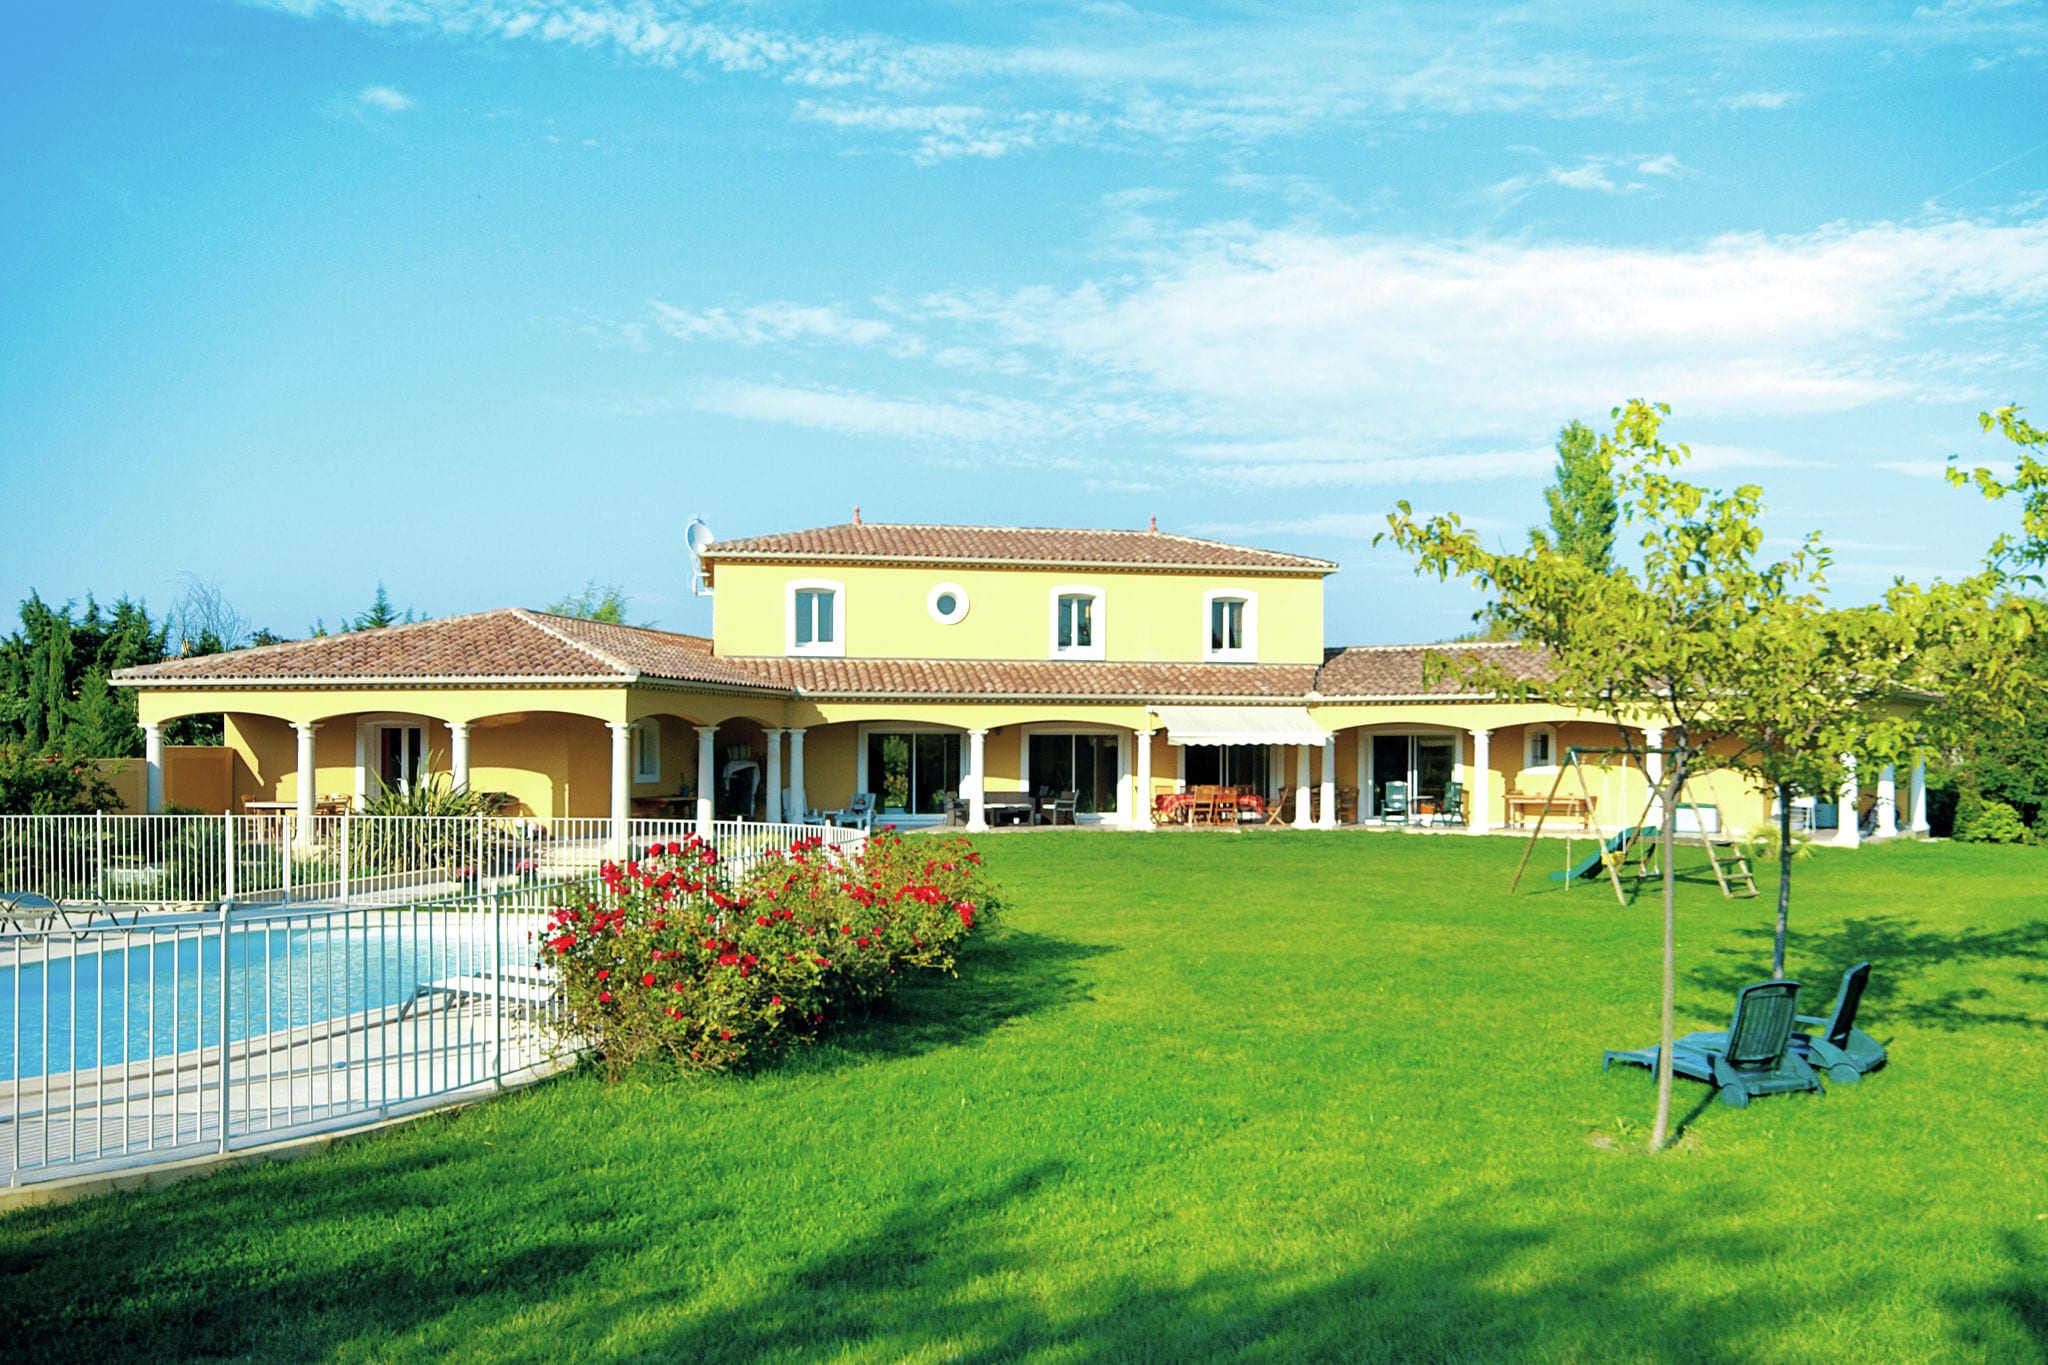 Provencal villa in L'Isle-sur-la-Sorgue with swimming pool